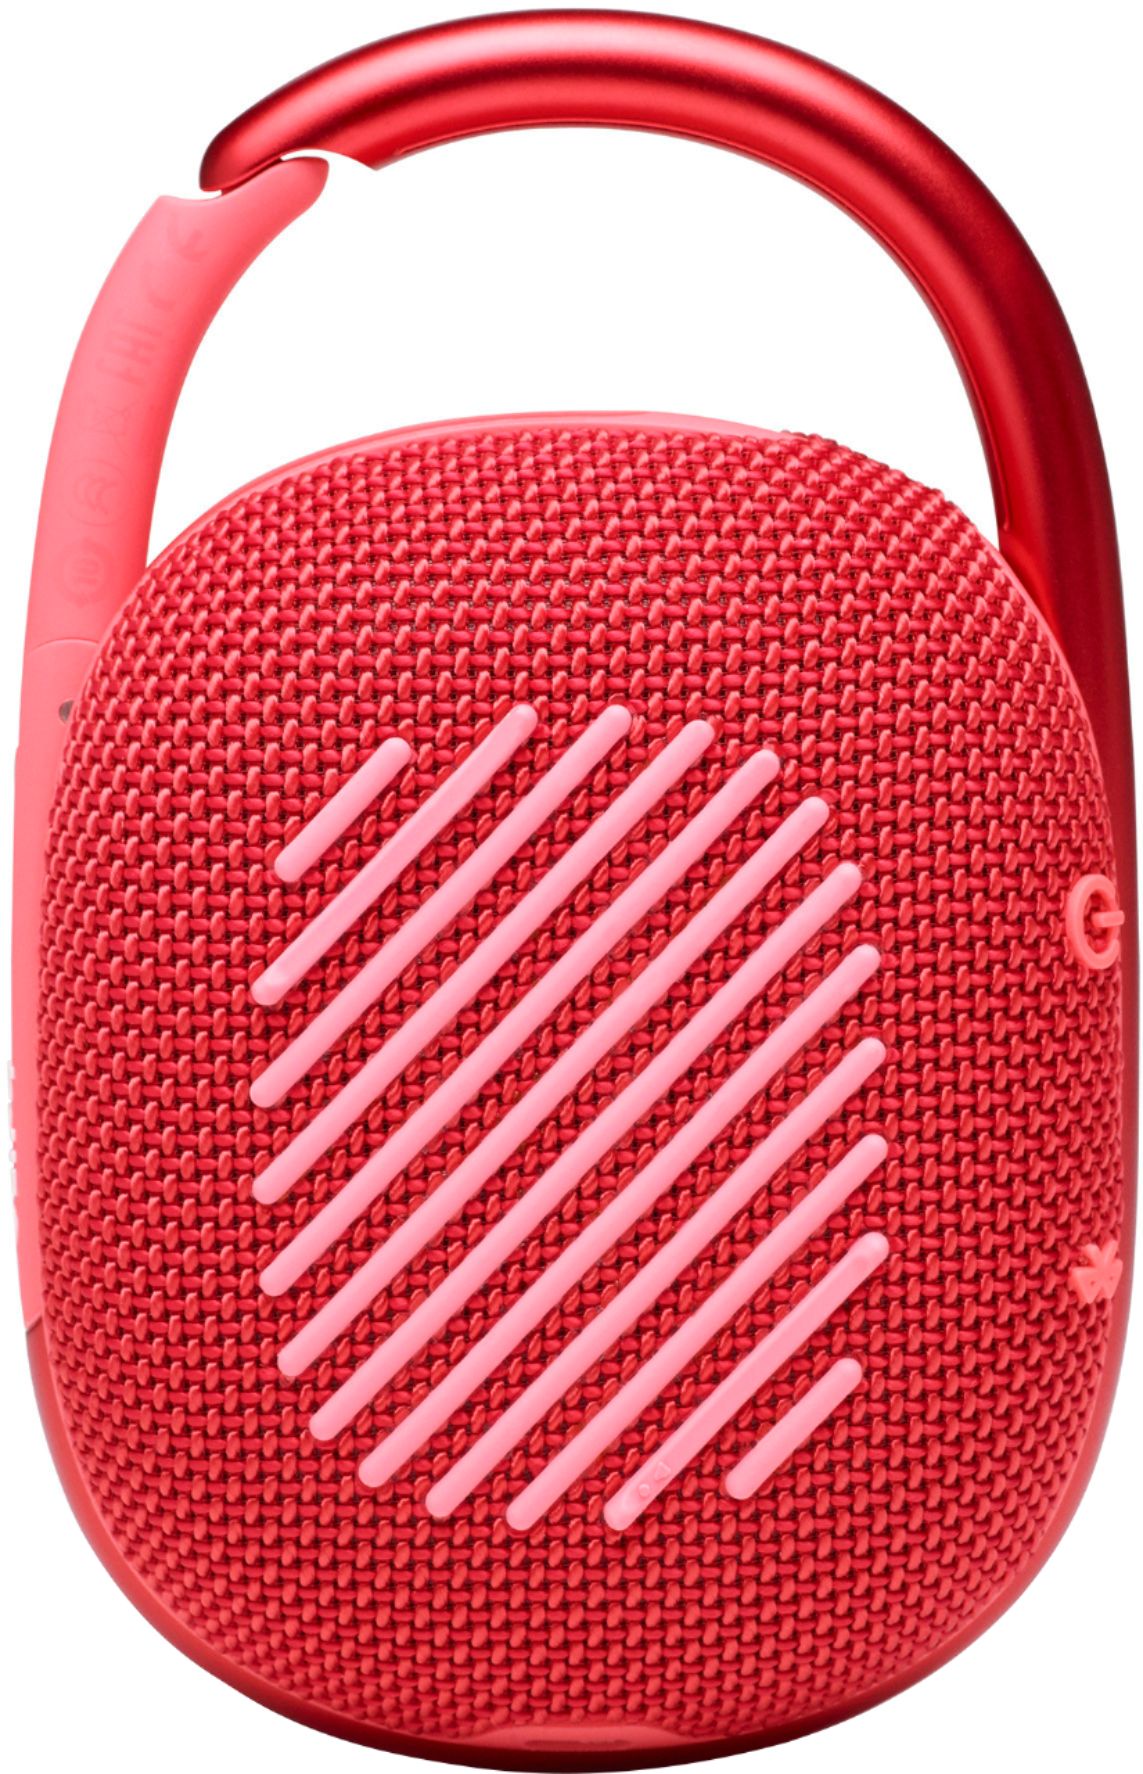 JBL Clip 4 Red Waterproof Portable Bluetooth Speaker